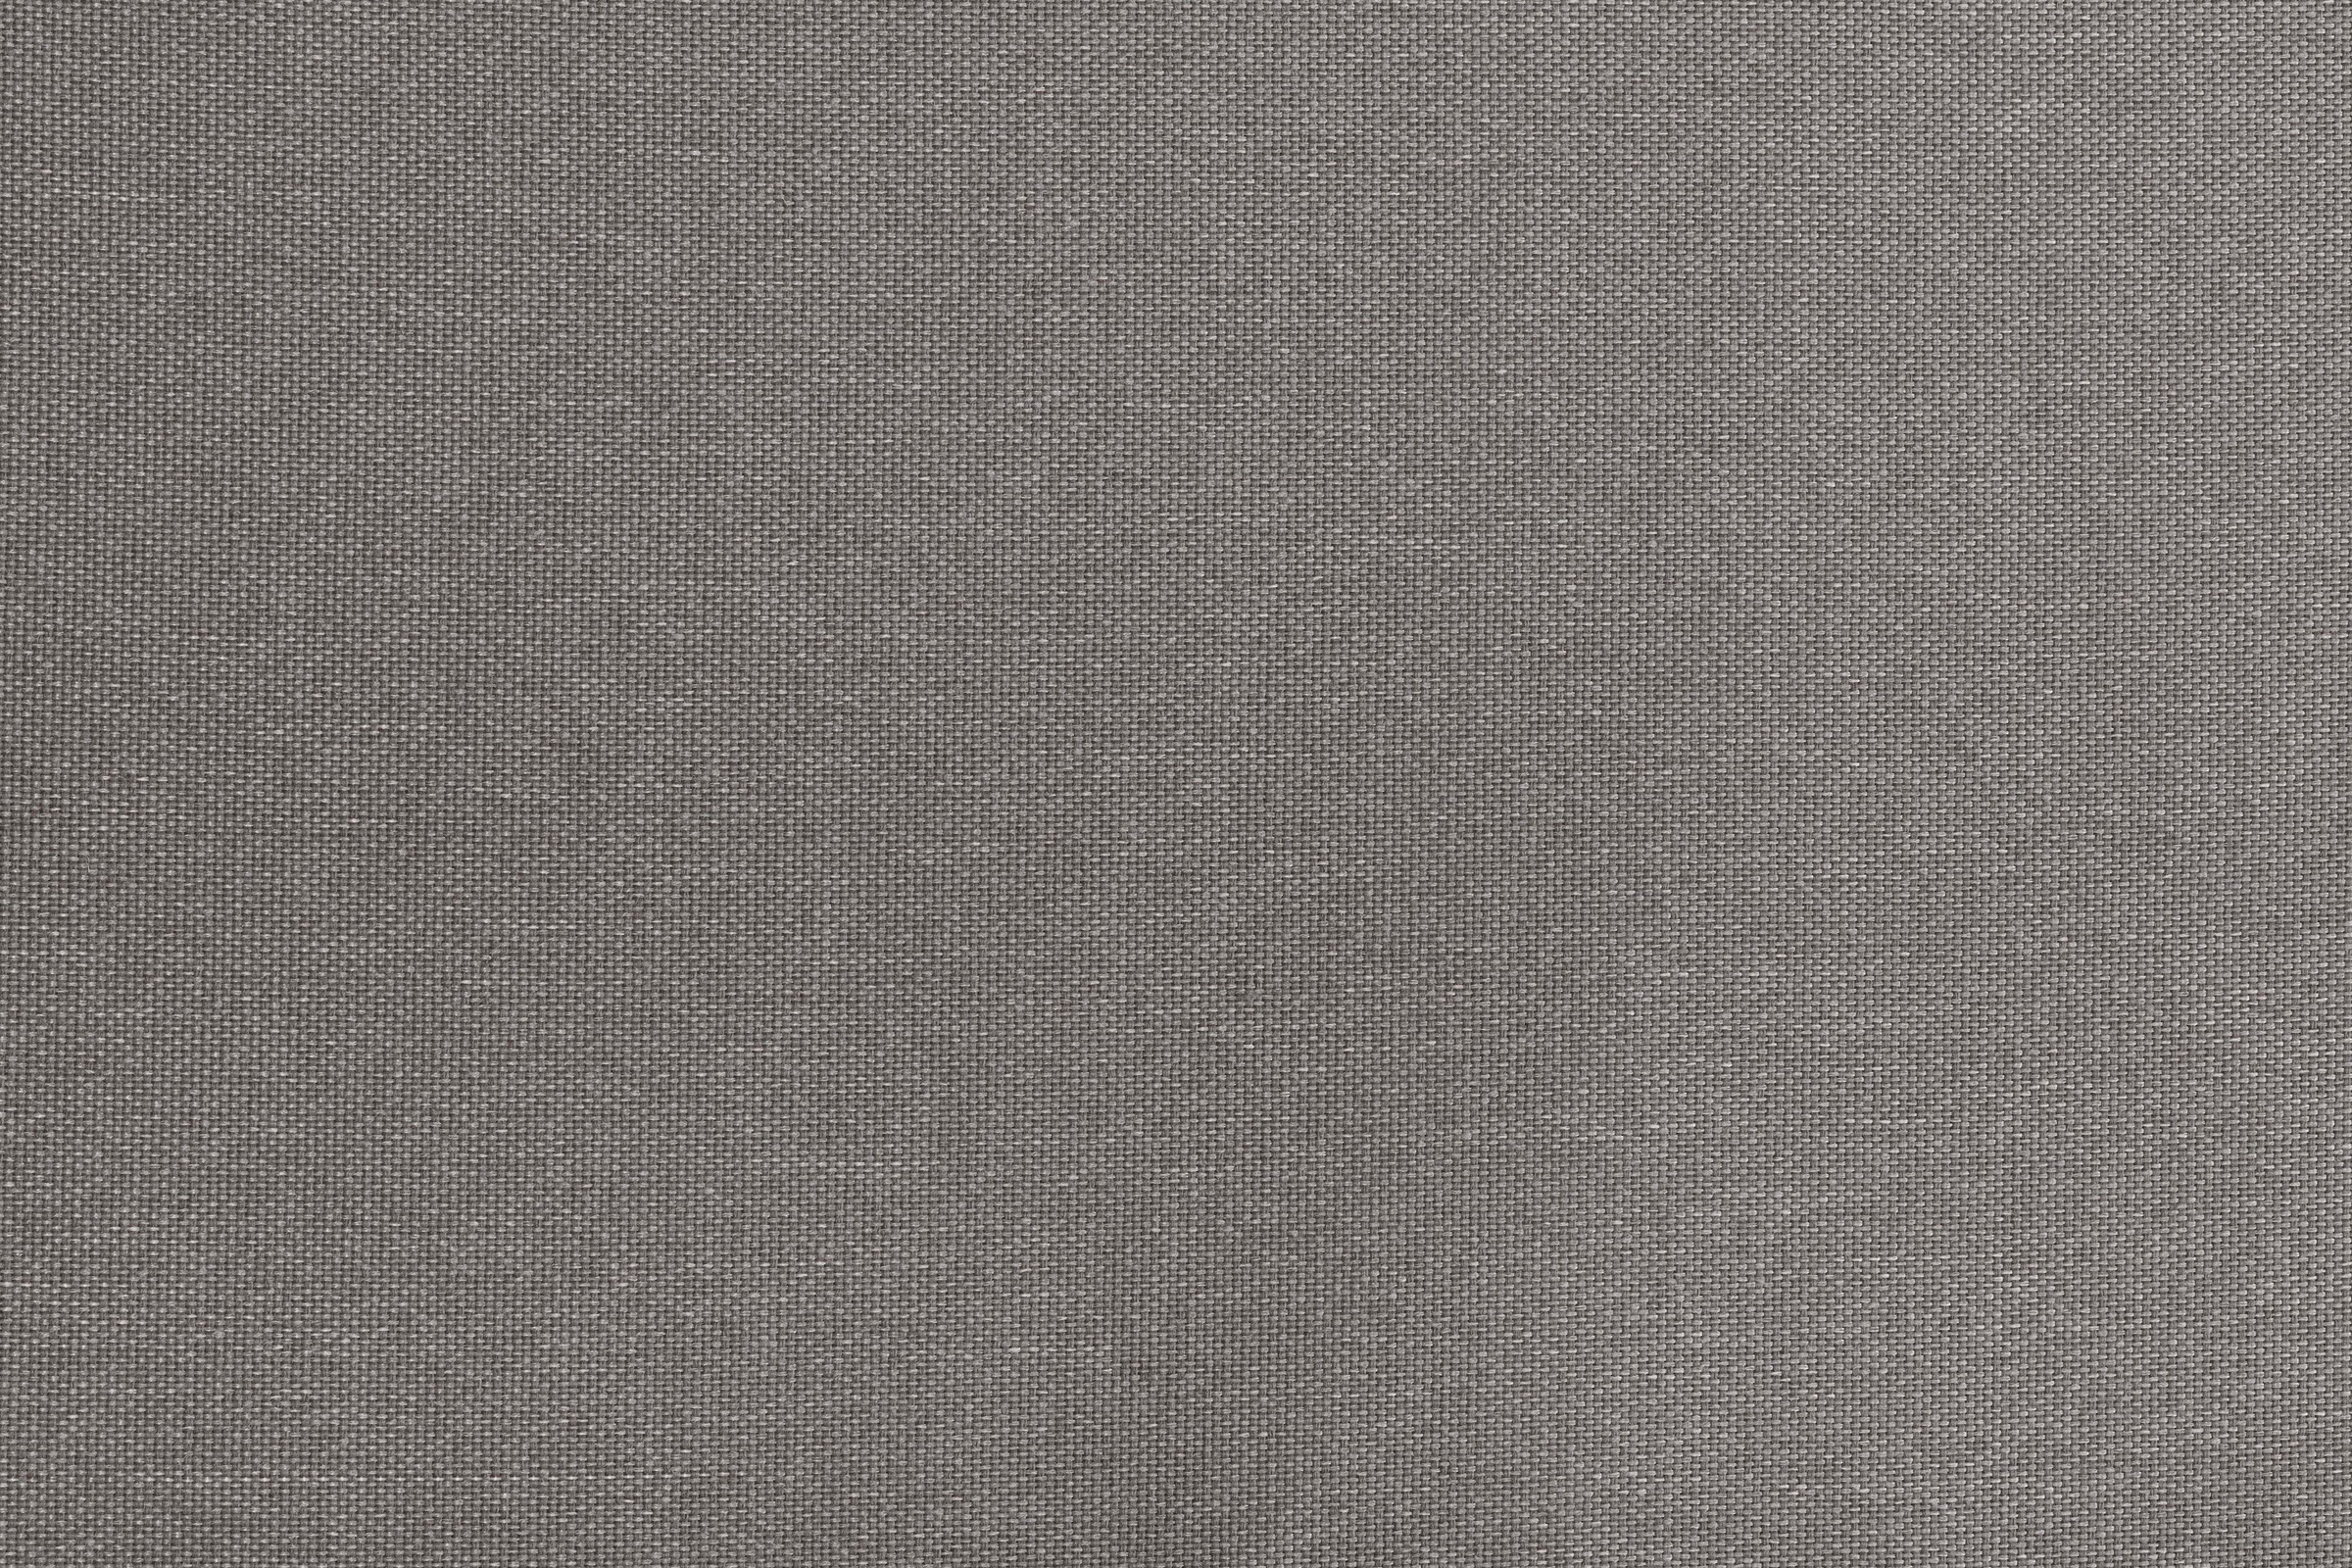 KONIFERA Balkonset »Mailand«, (Set, 7 tlg., 2 Sessel, Tisch Ø 50 cm, inkl. Auflagen), Polyrattan, Tischplatte aus Sicherheitsglas, verzinkter Stahl